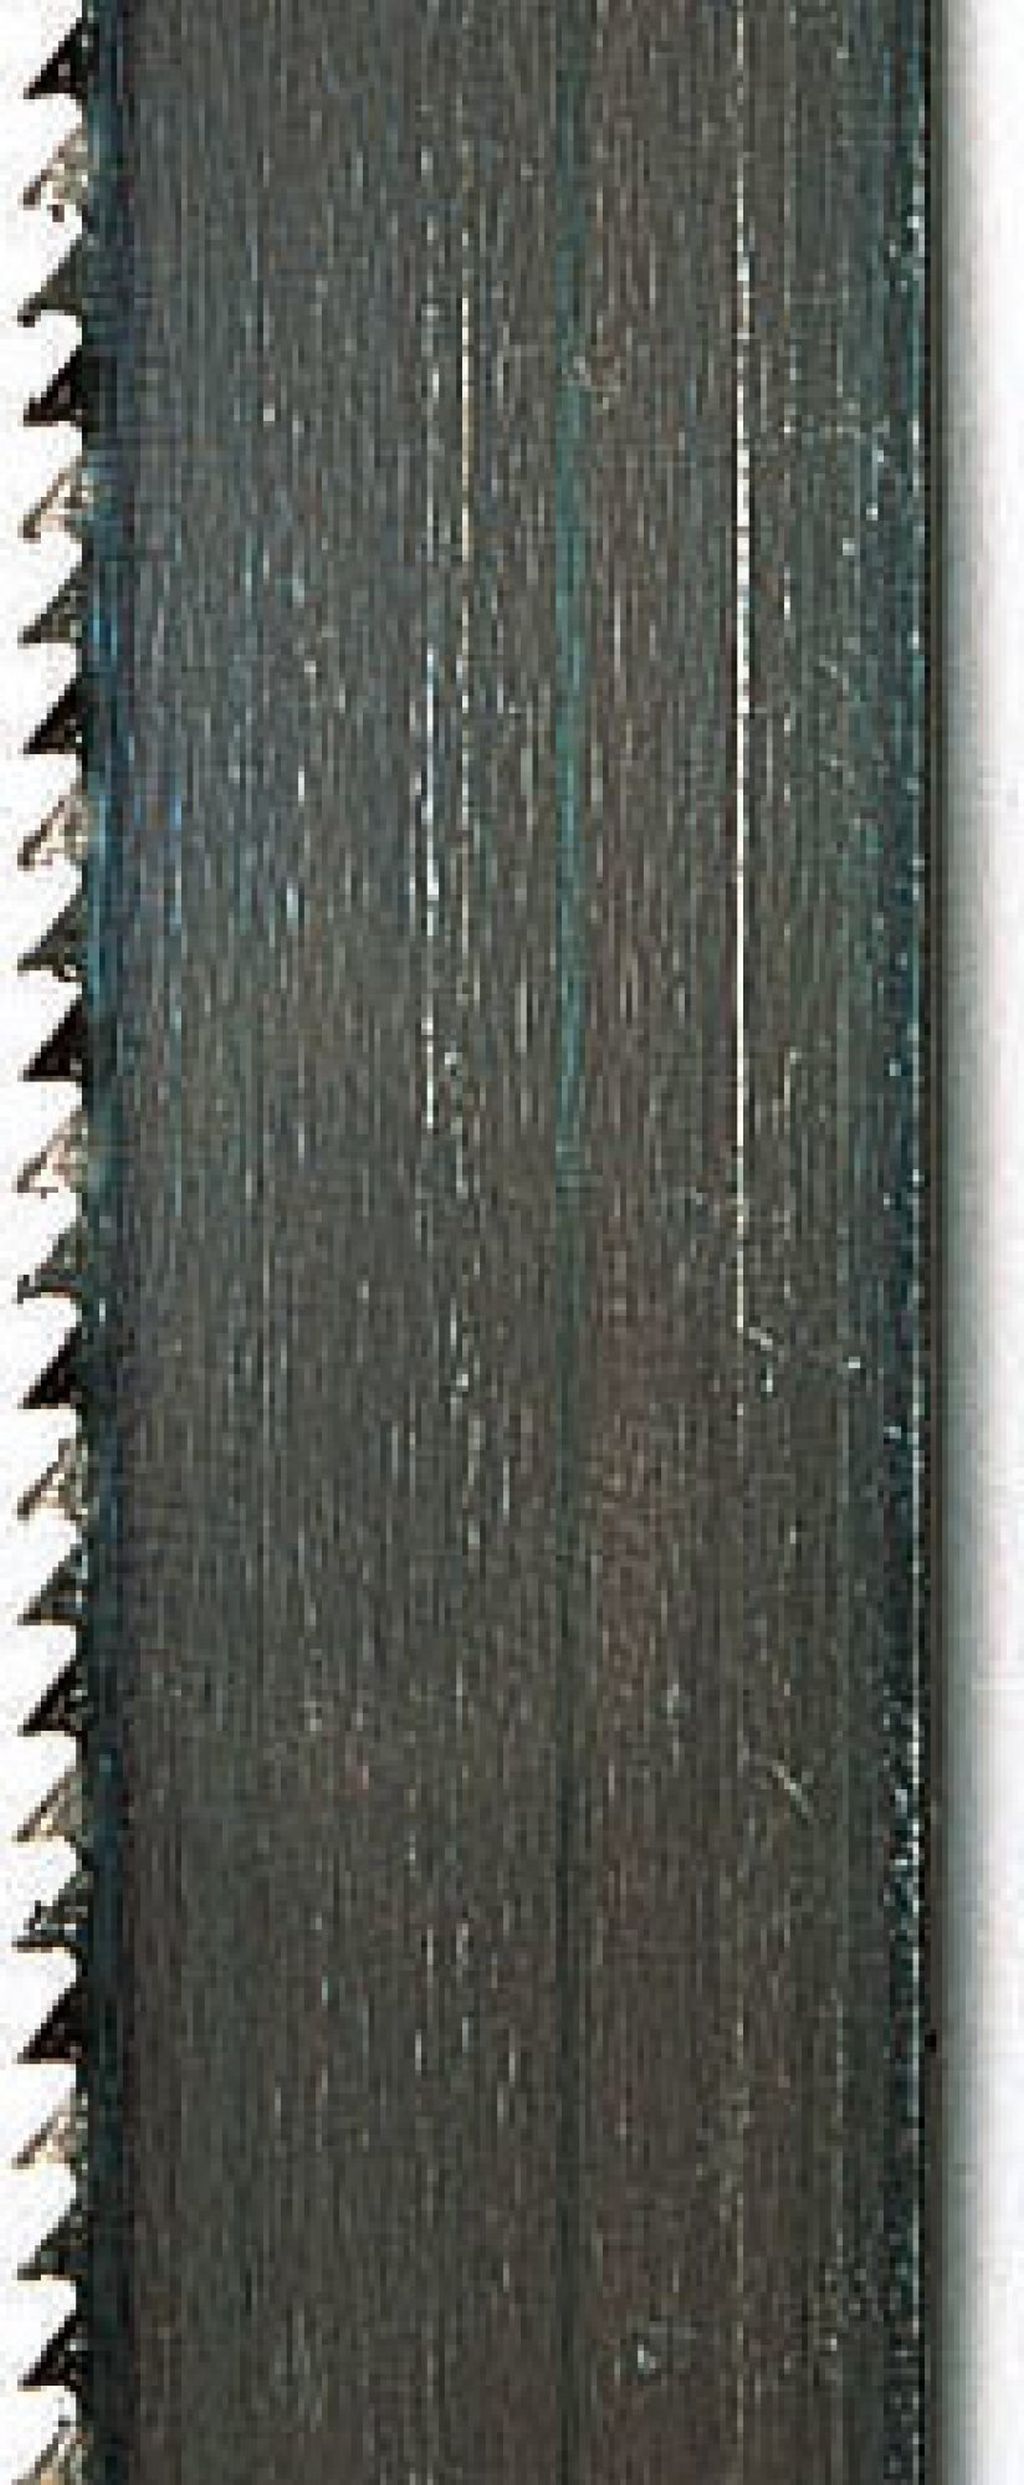 SCHEPPACH Pilový pás 6/0,36/1490mm, 24 z/´´, neželezné kovy do tl. 10mm 7901501605